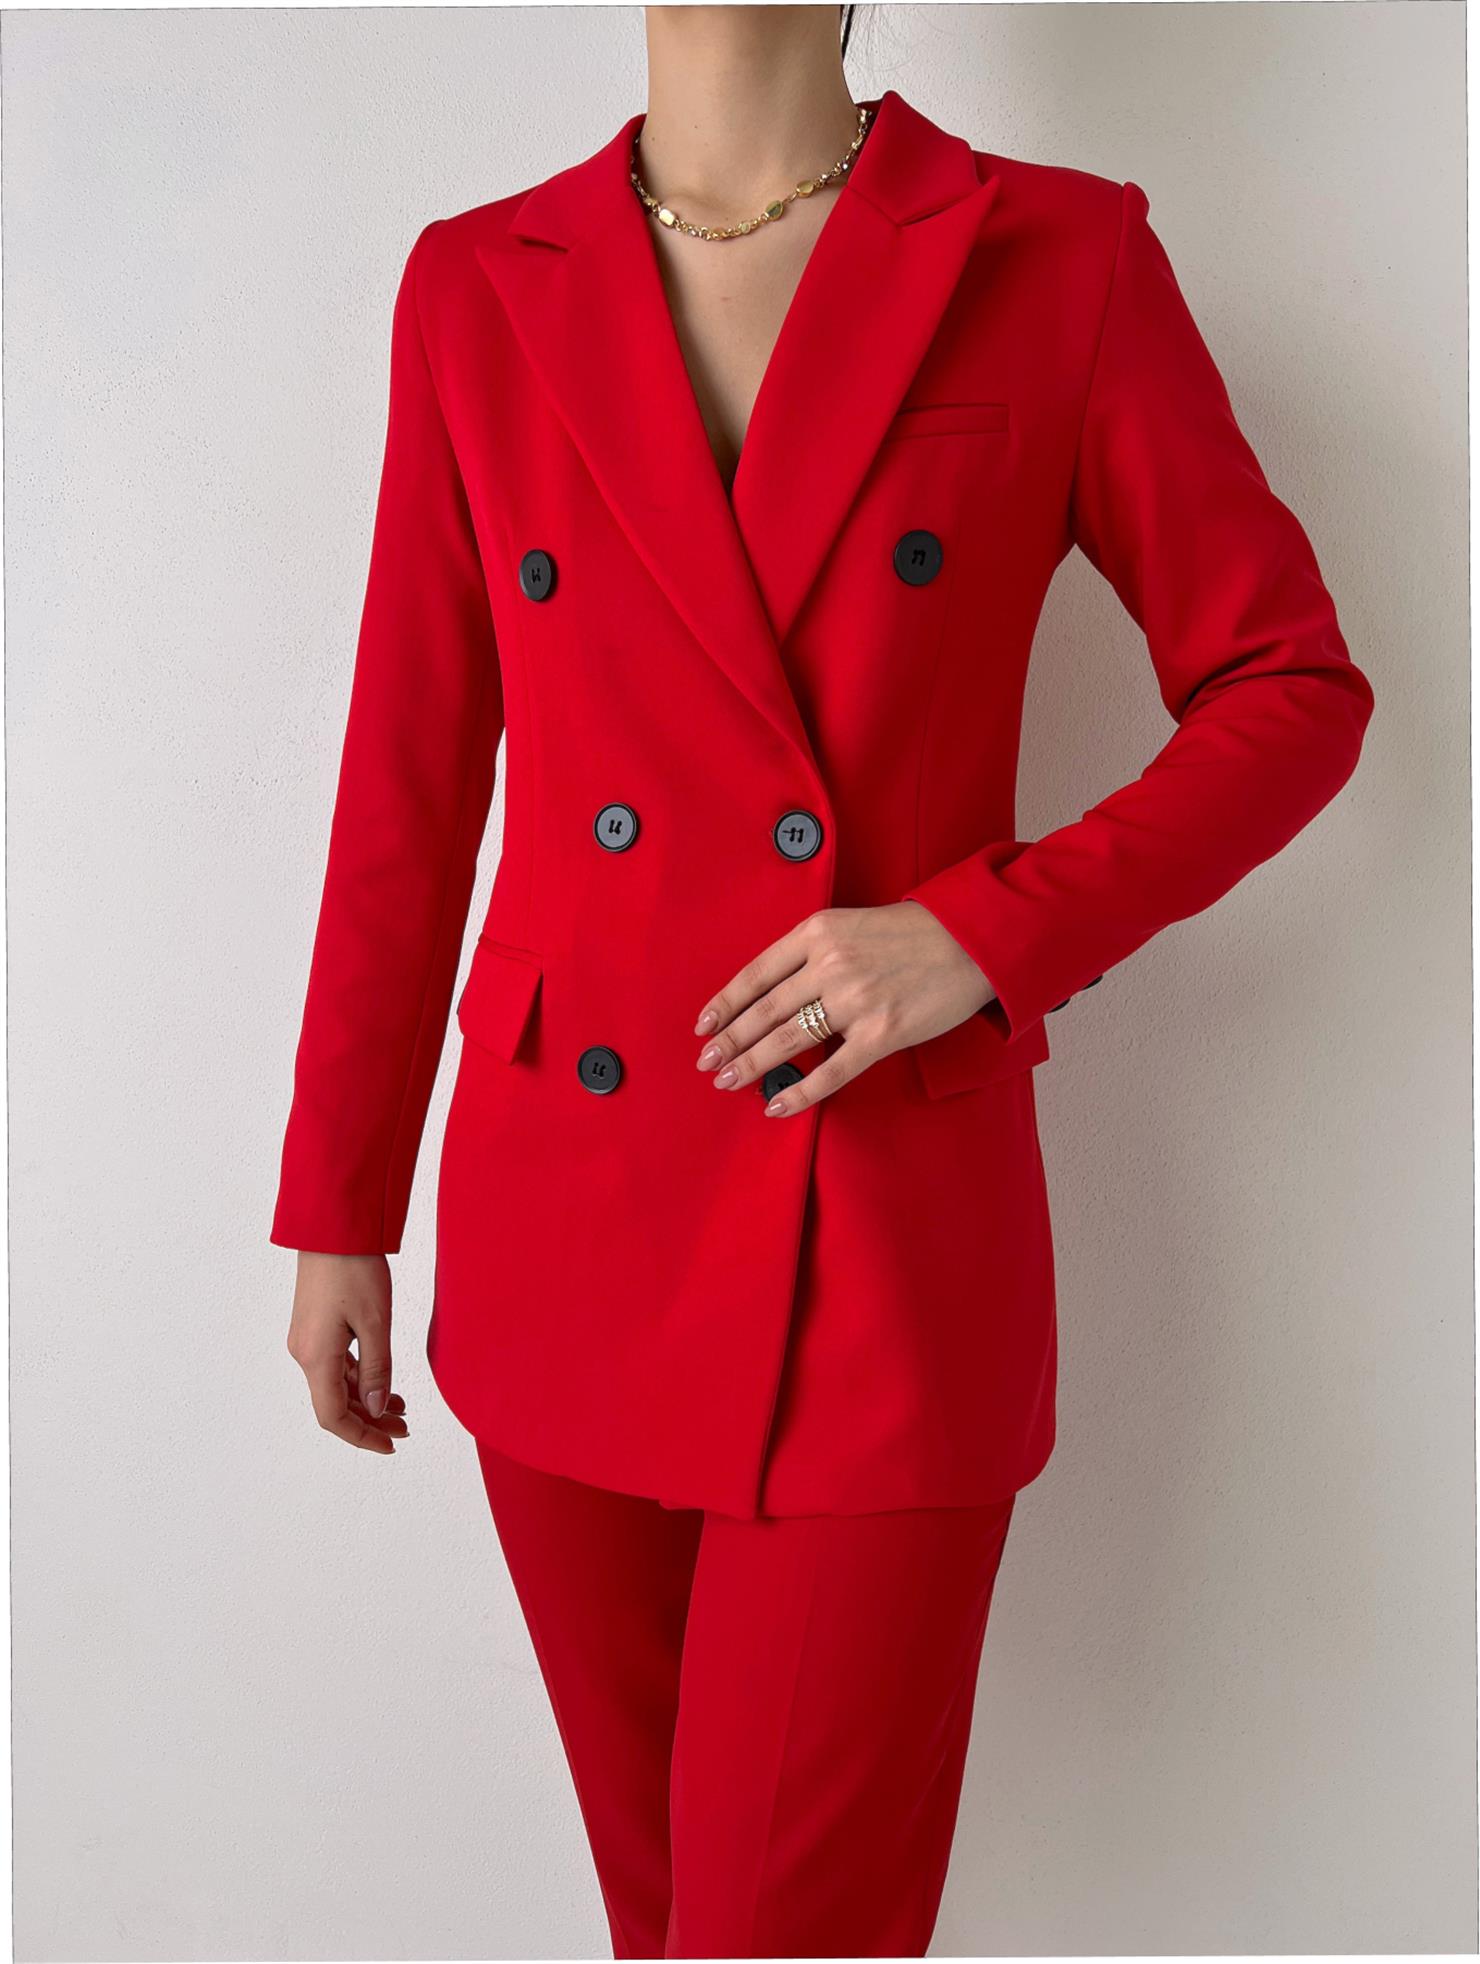 Çift Düğme Kapamalı Kruvaze Yaka Callie Kadın Kırmızı Blazer Ceket 23Y000019